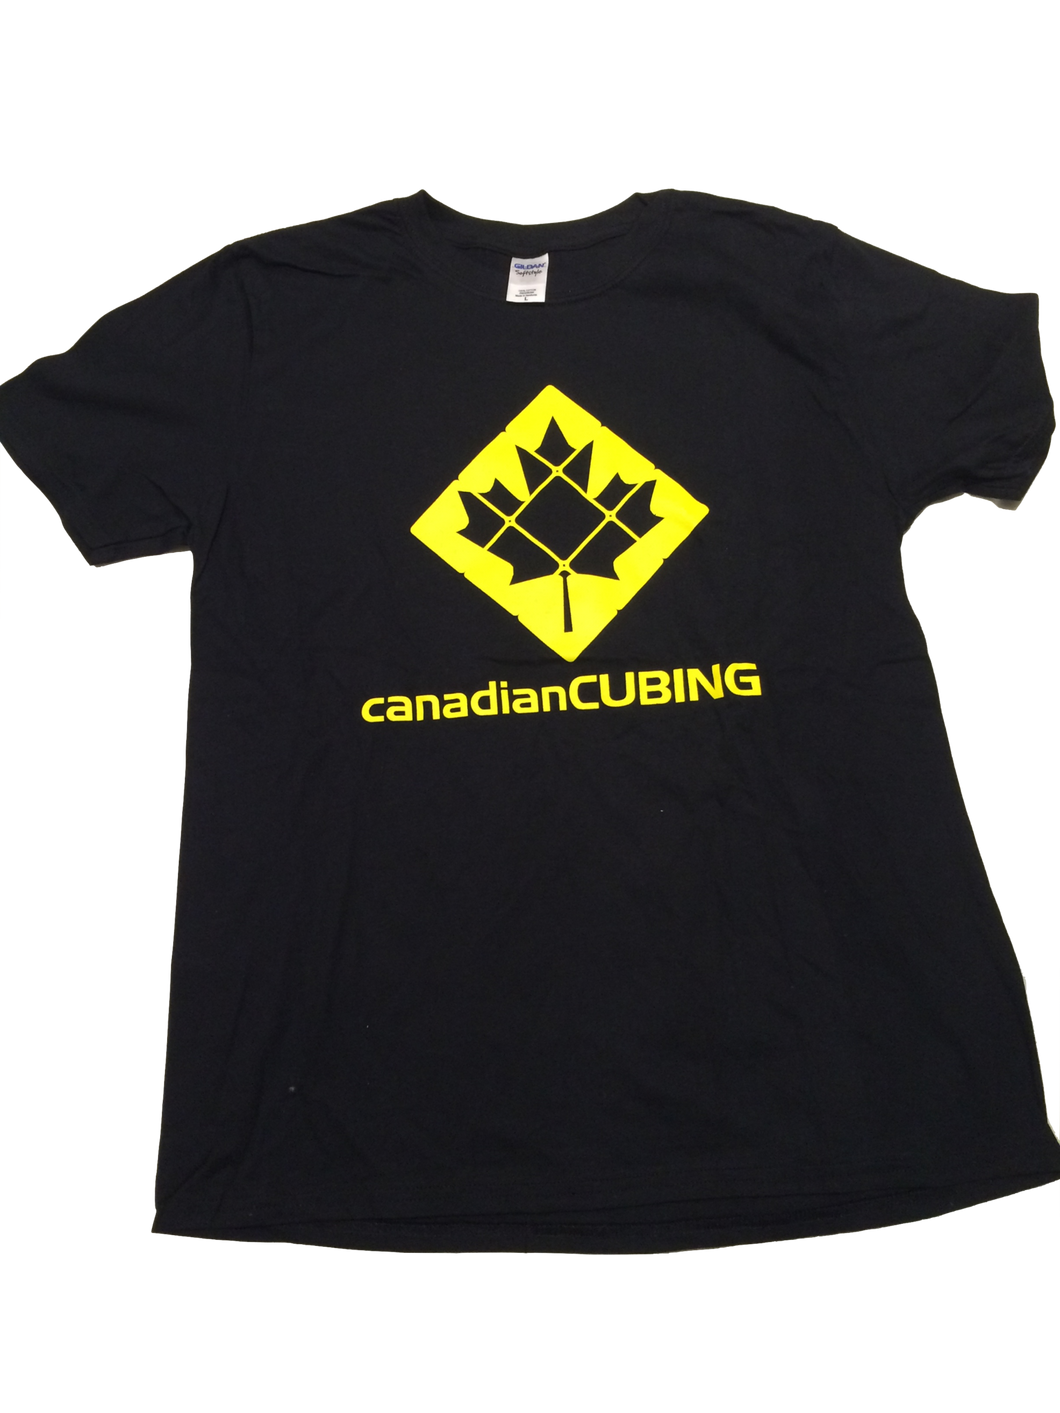 canadianCUBING - Shirt